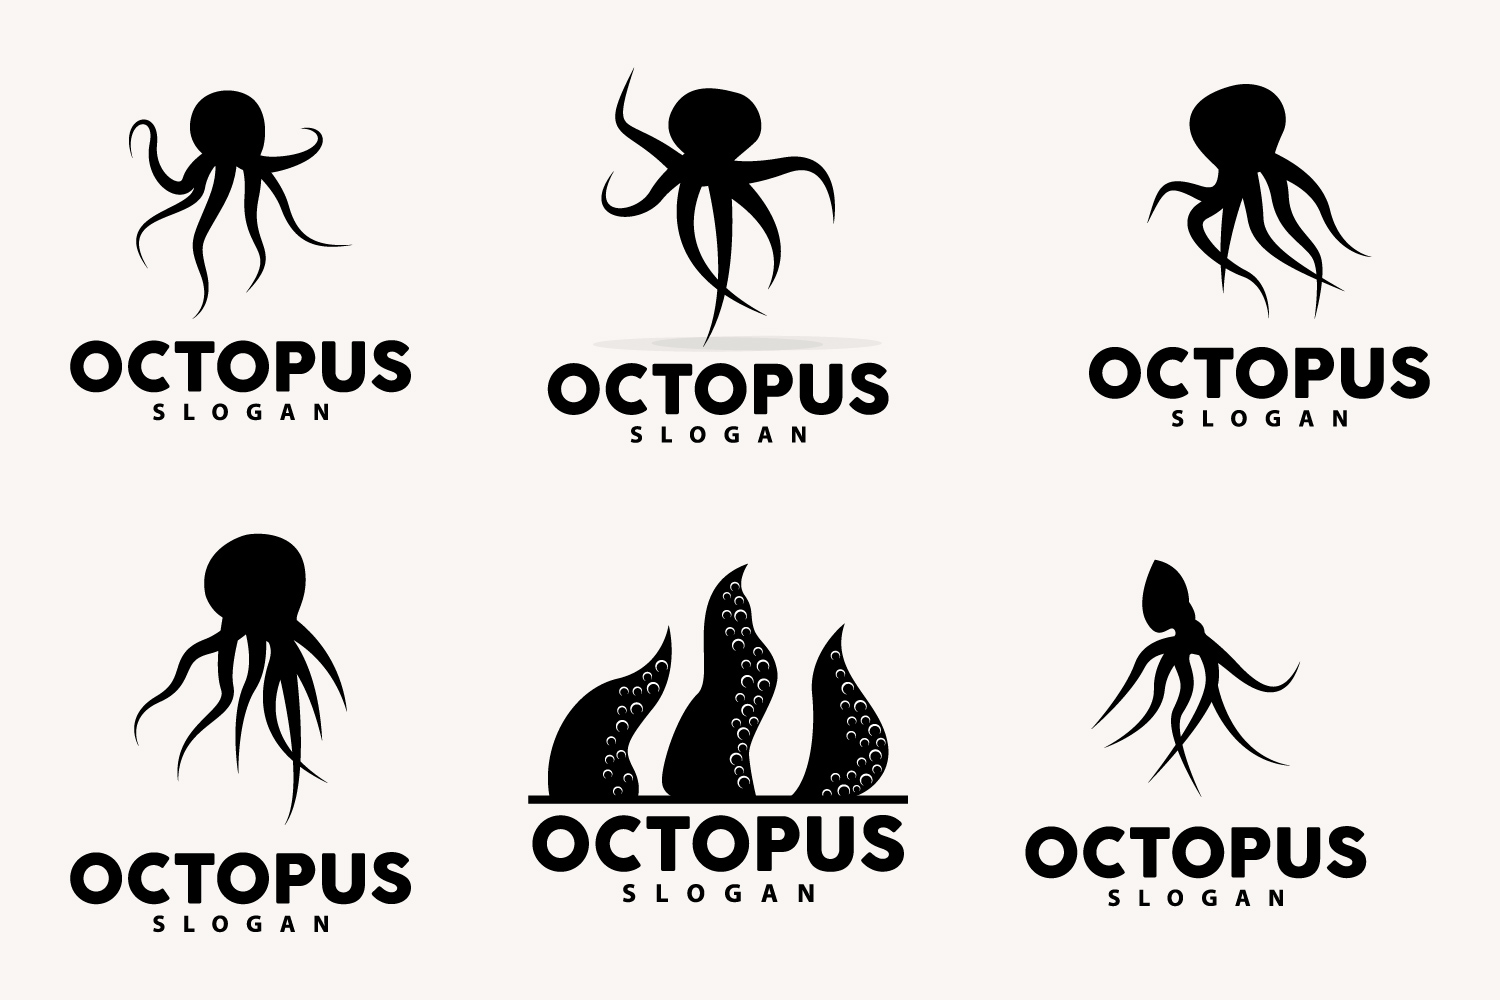 Octopus Logo Old Retro Vintage DesignV2